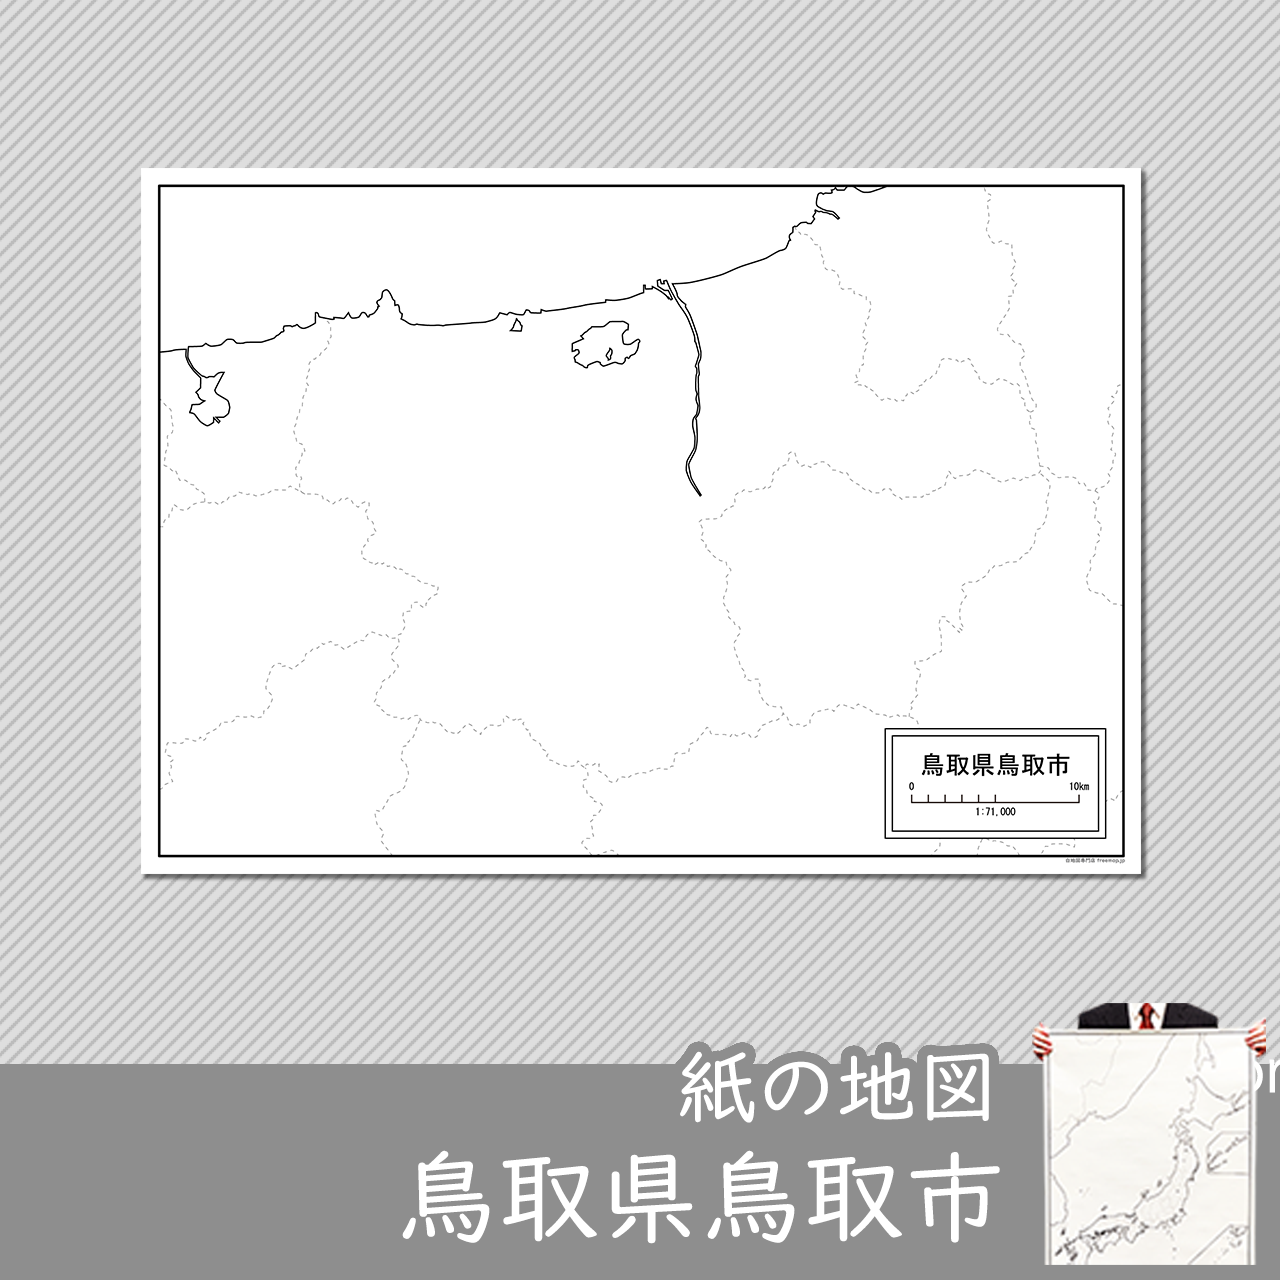 鳥取市の紙の白地図のサムネイル